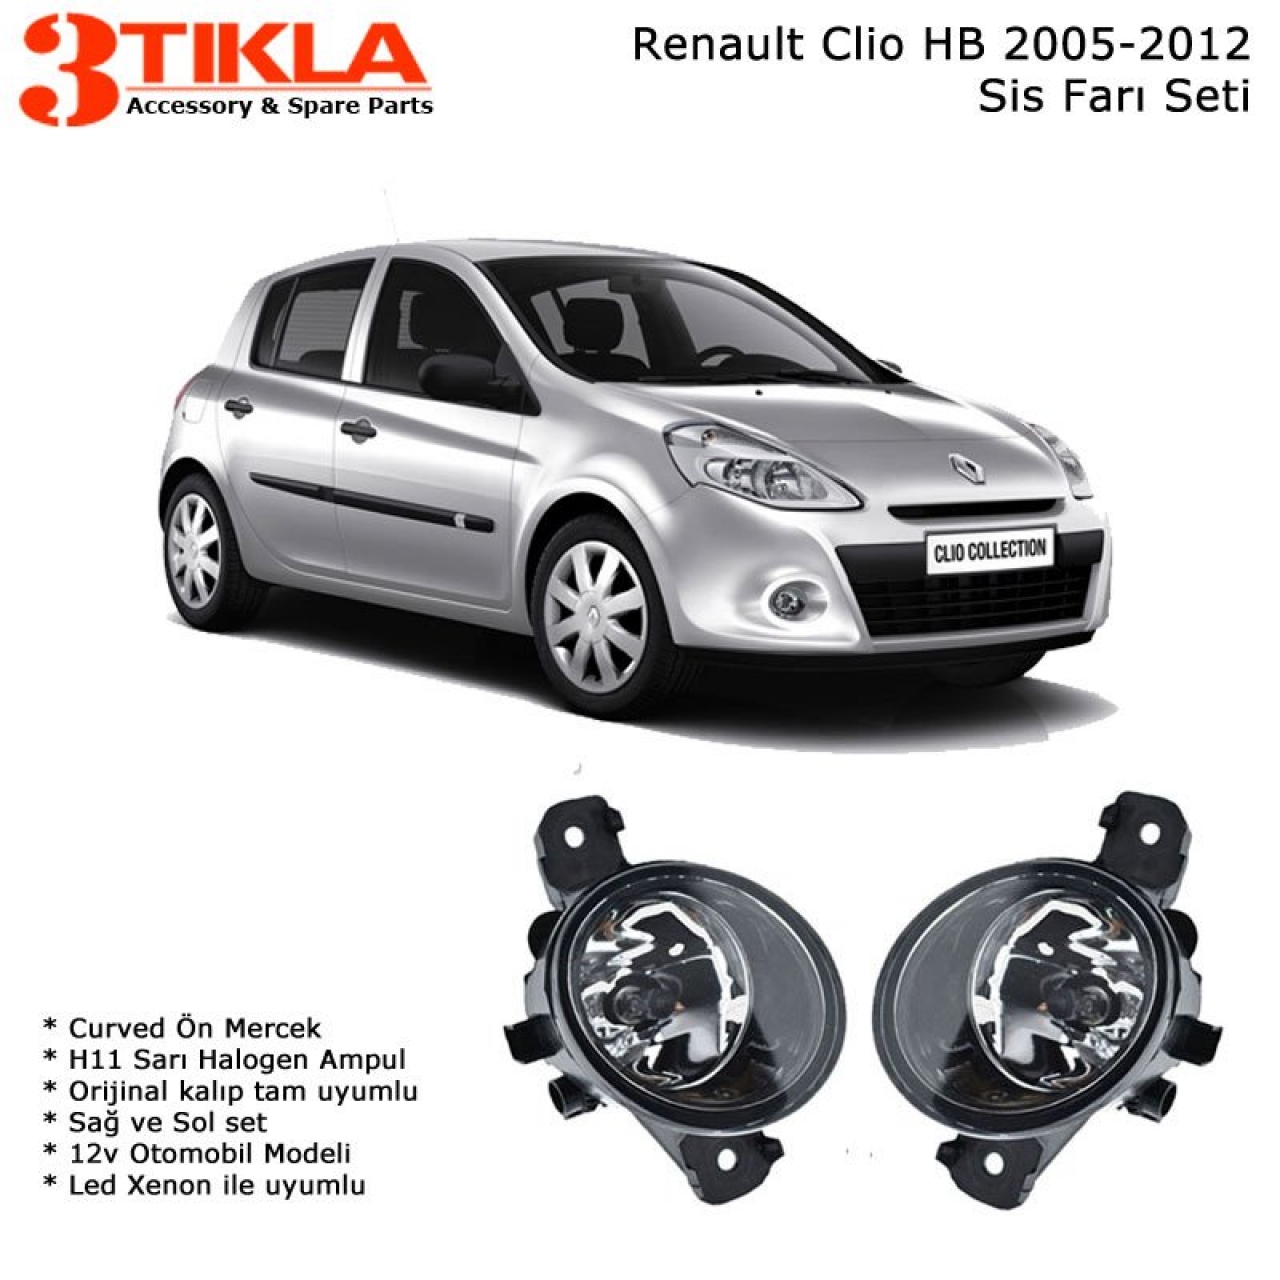 Renault Clio III HB 2005-2012 Sis Farı Set  Oem:  8200002469-70